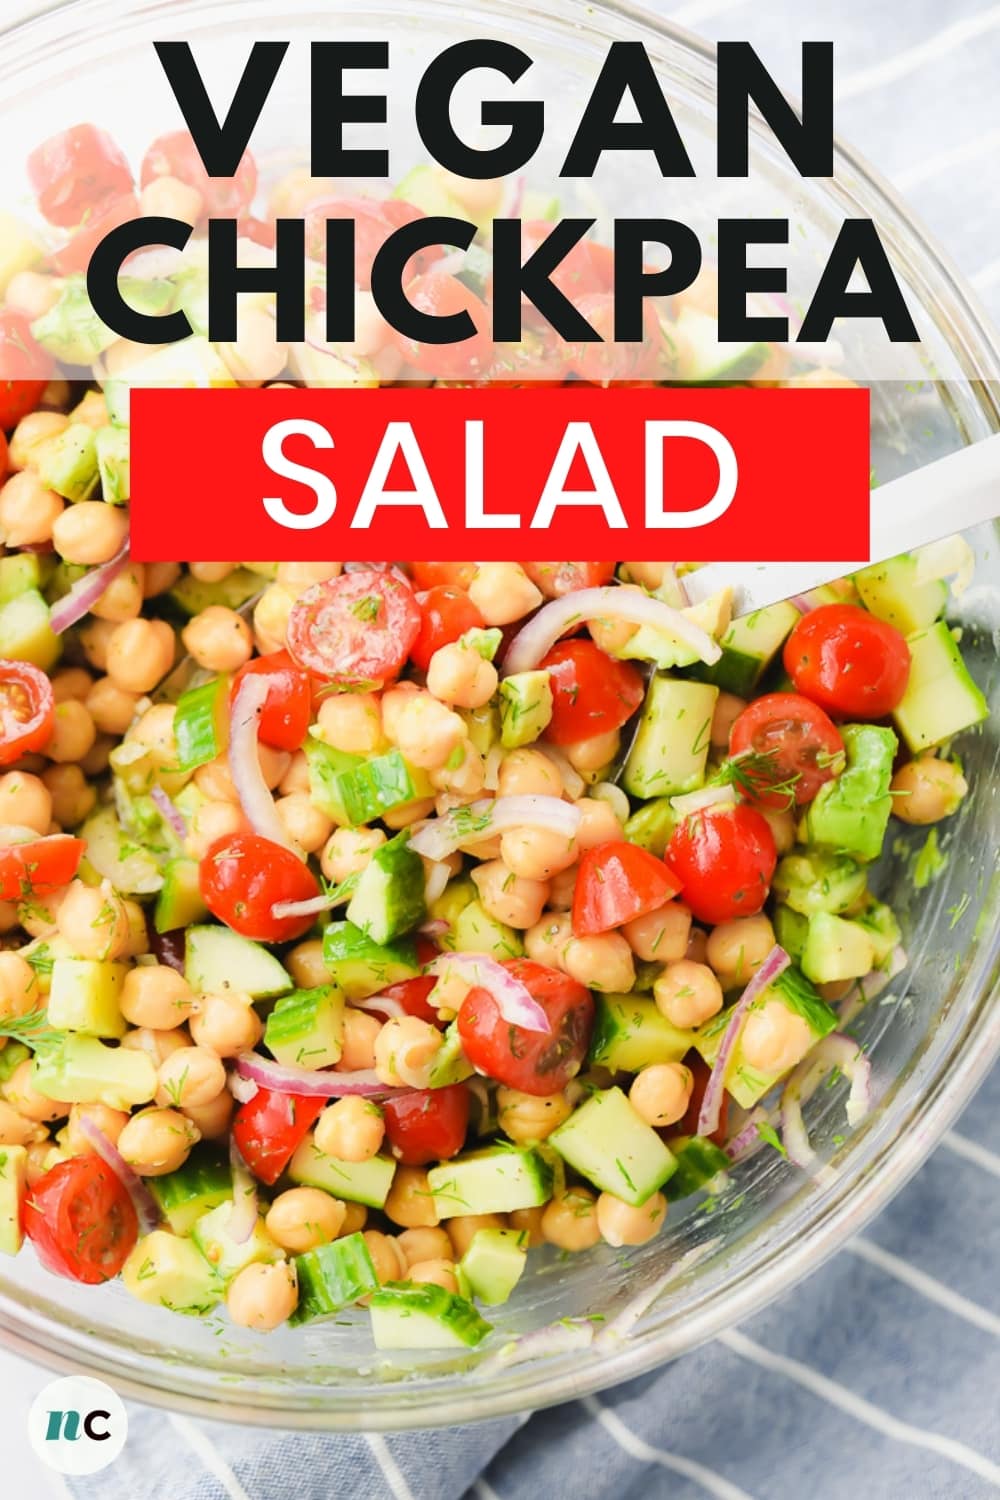 Chickpea Salad Recipe - Nora Cooks